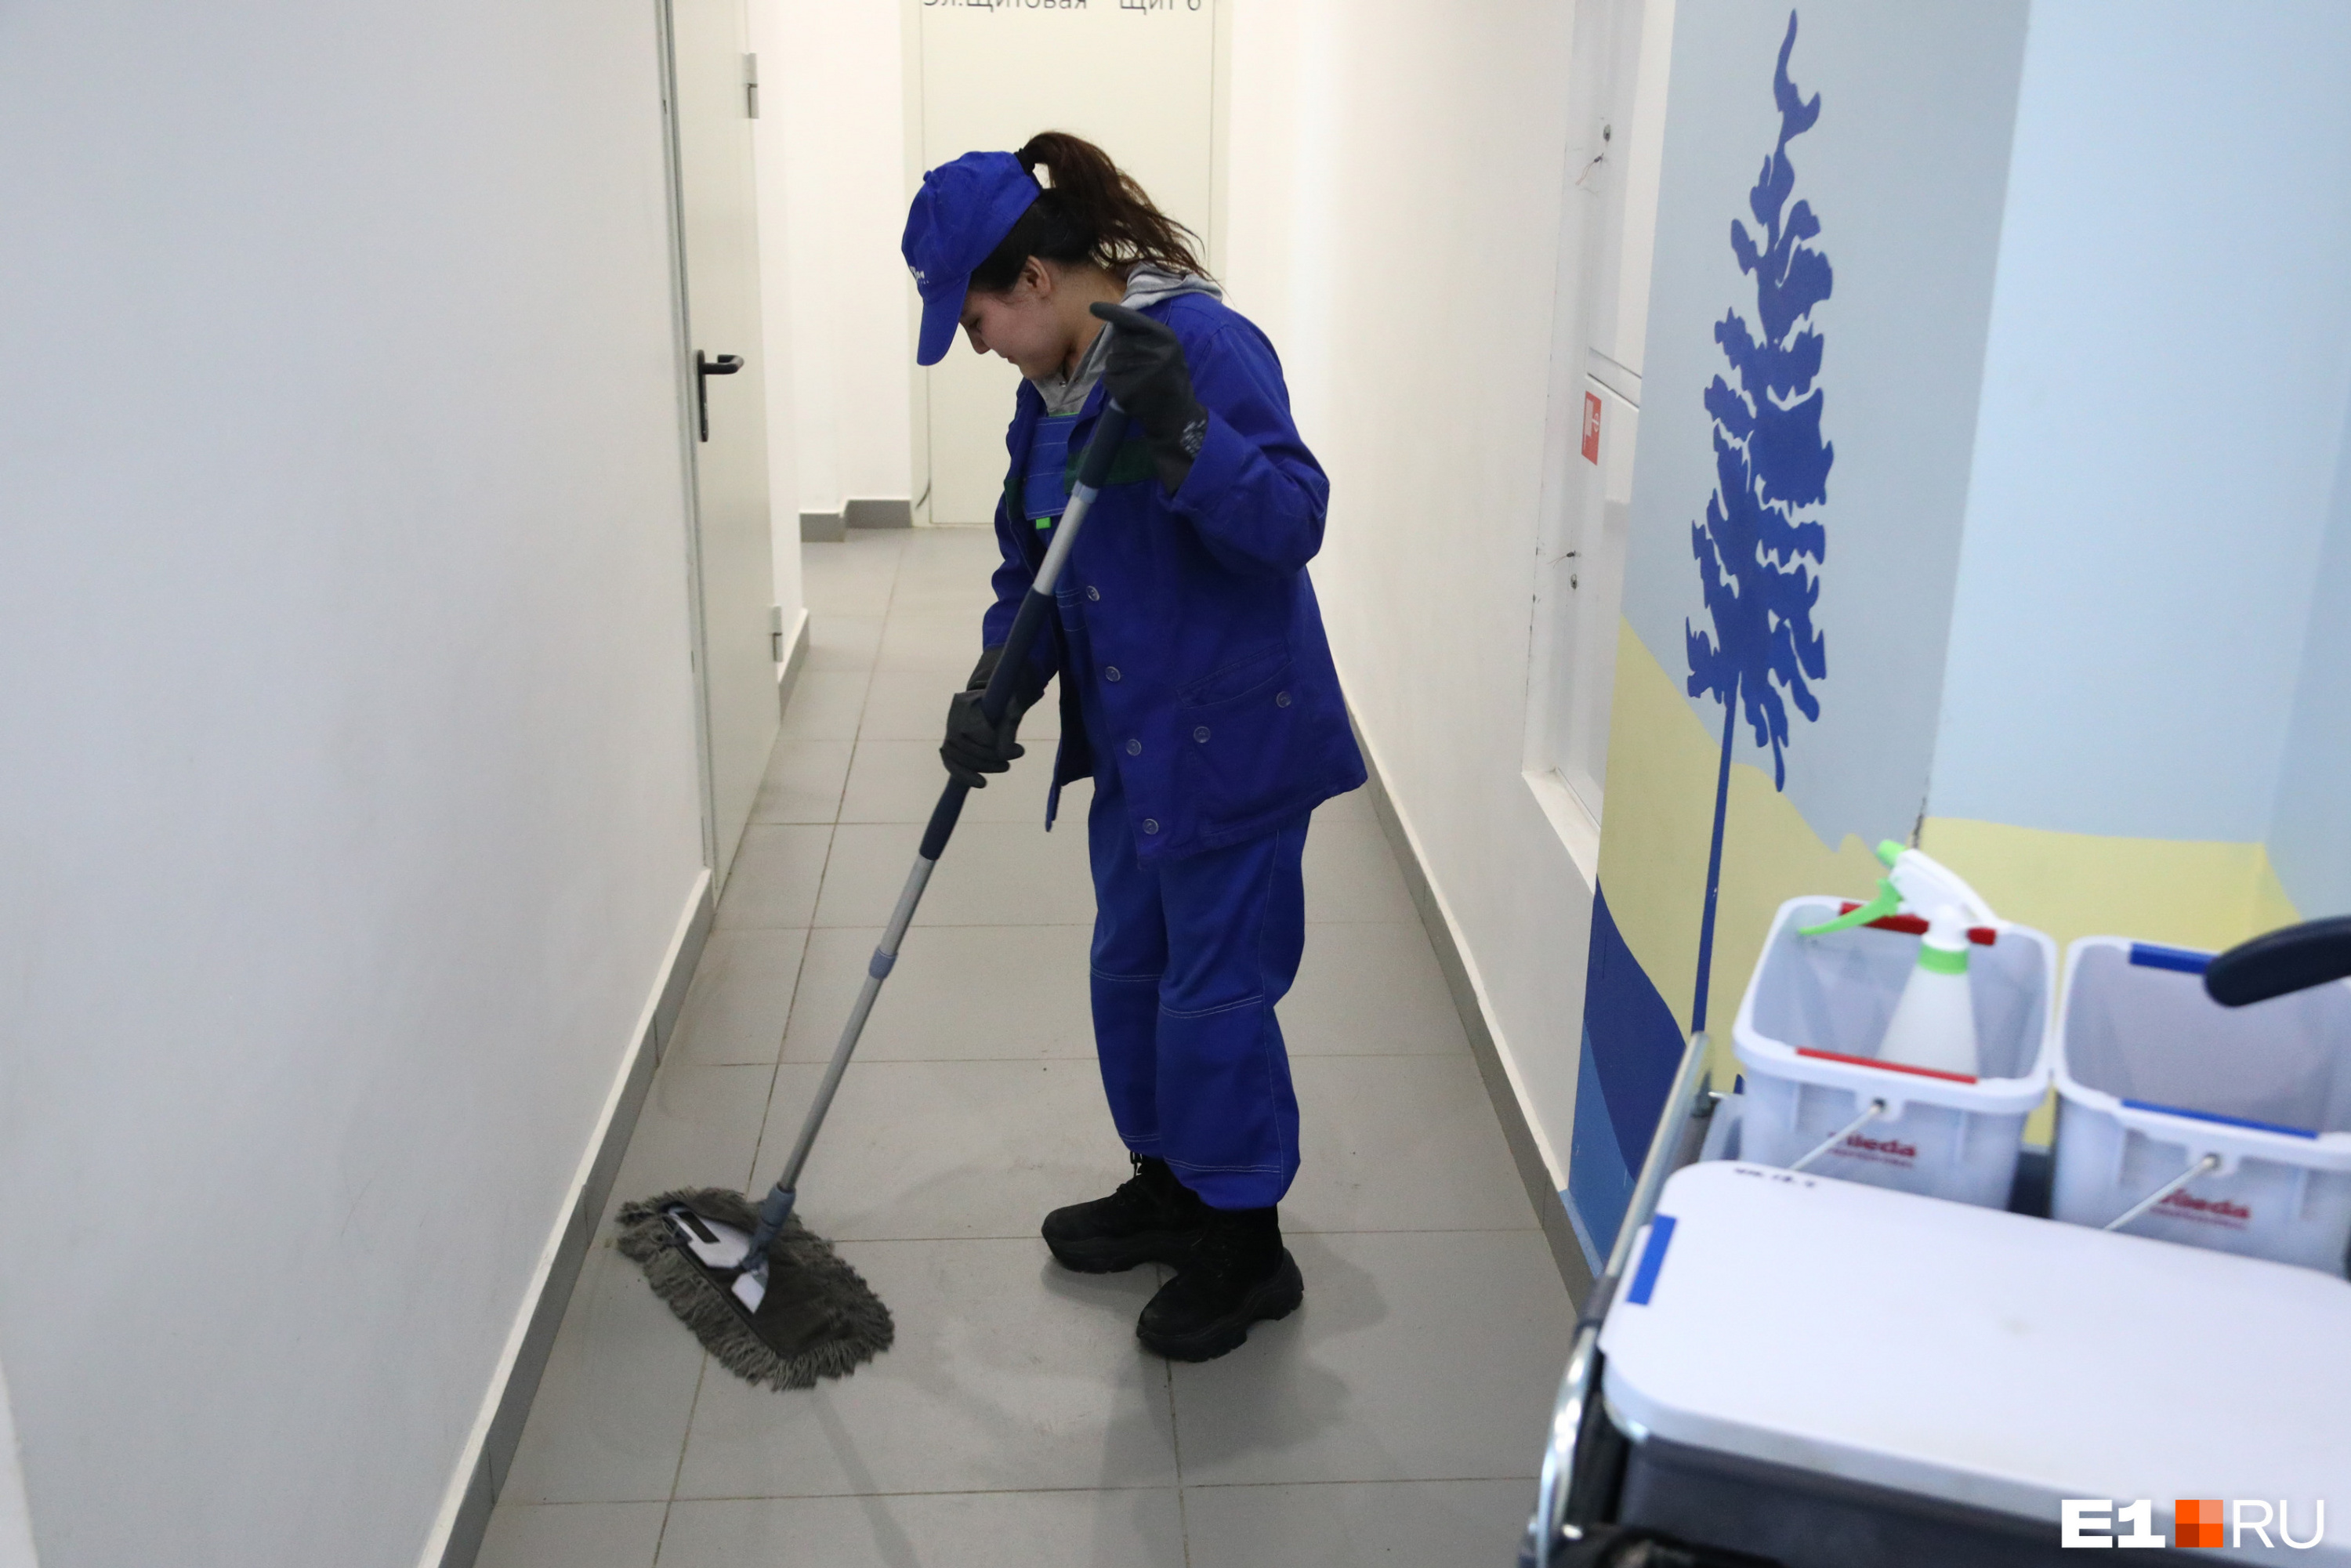 Уборщицы моют полы с помощью «мопов» — насадок из синтетического материала